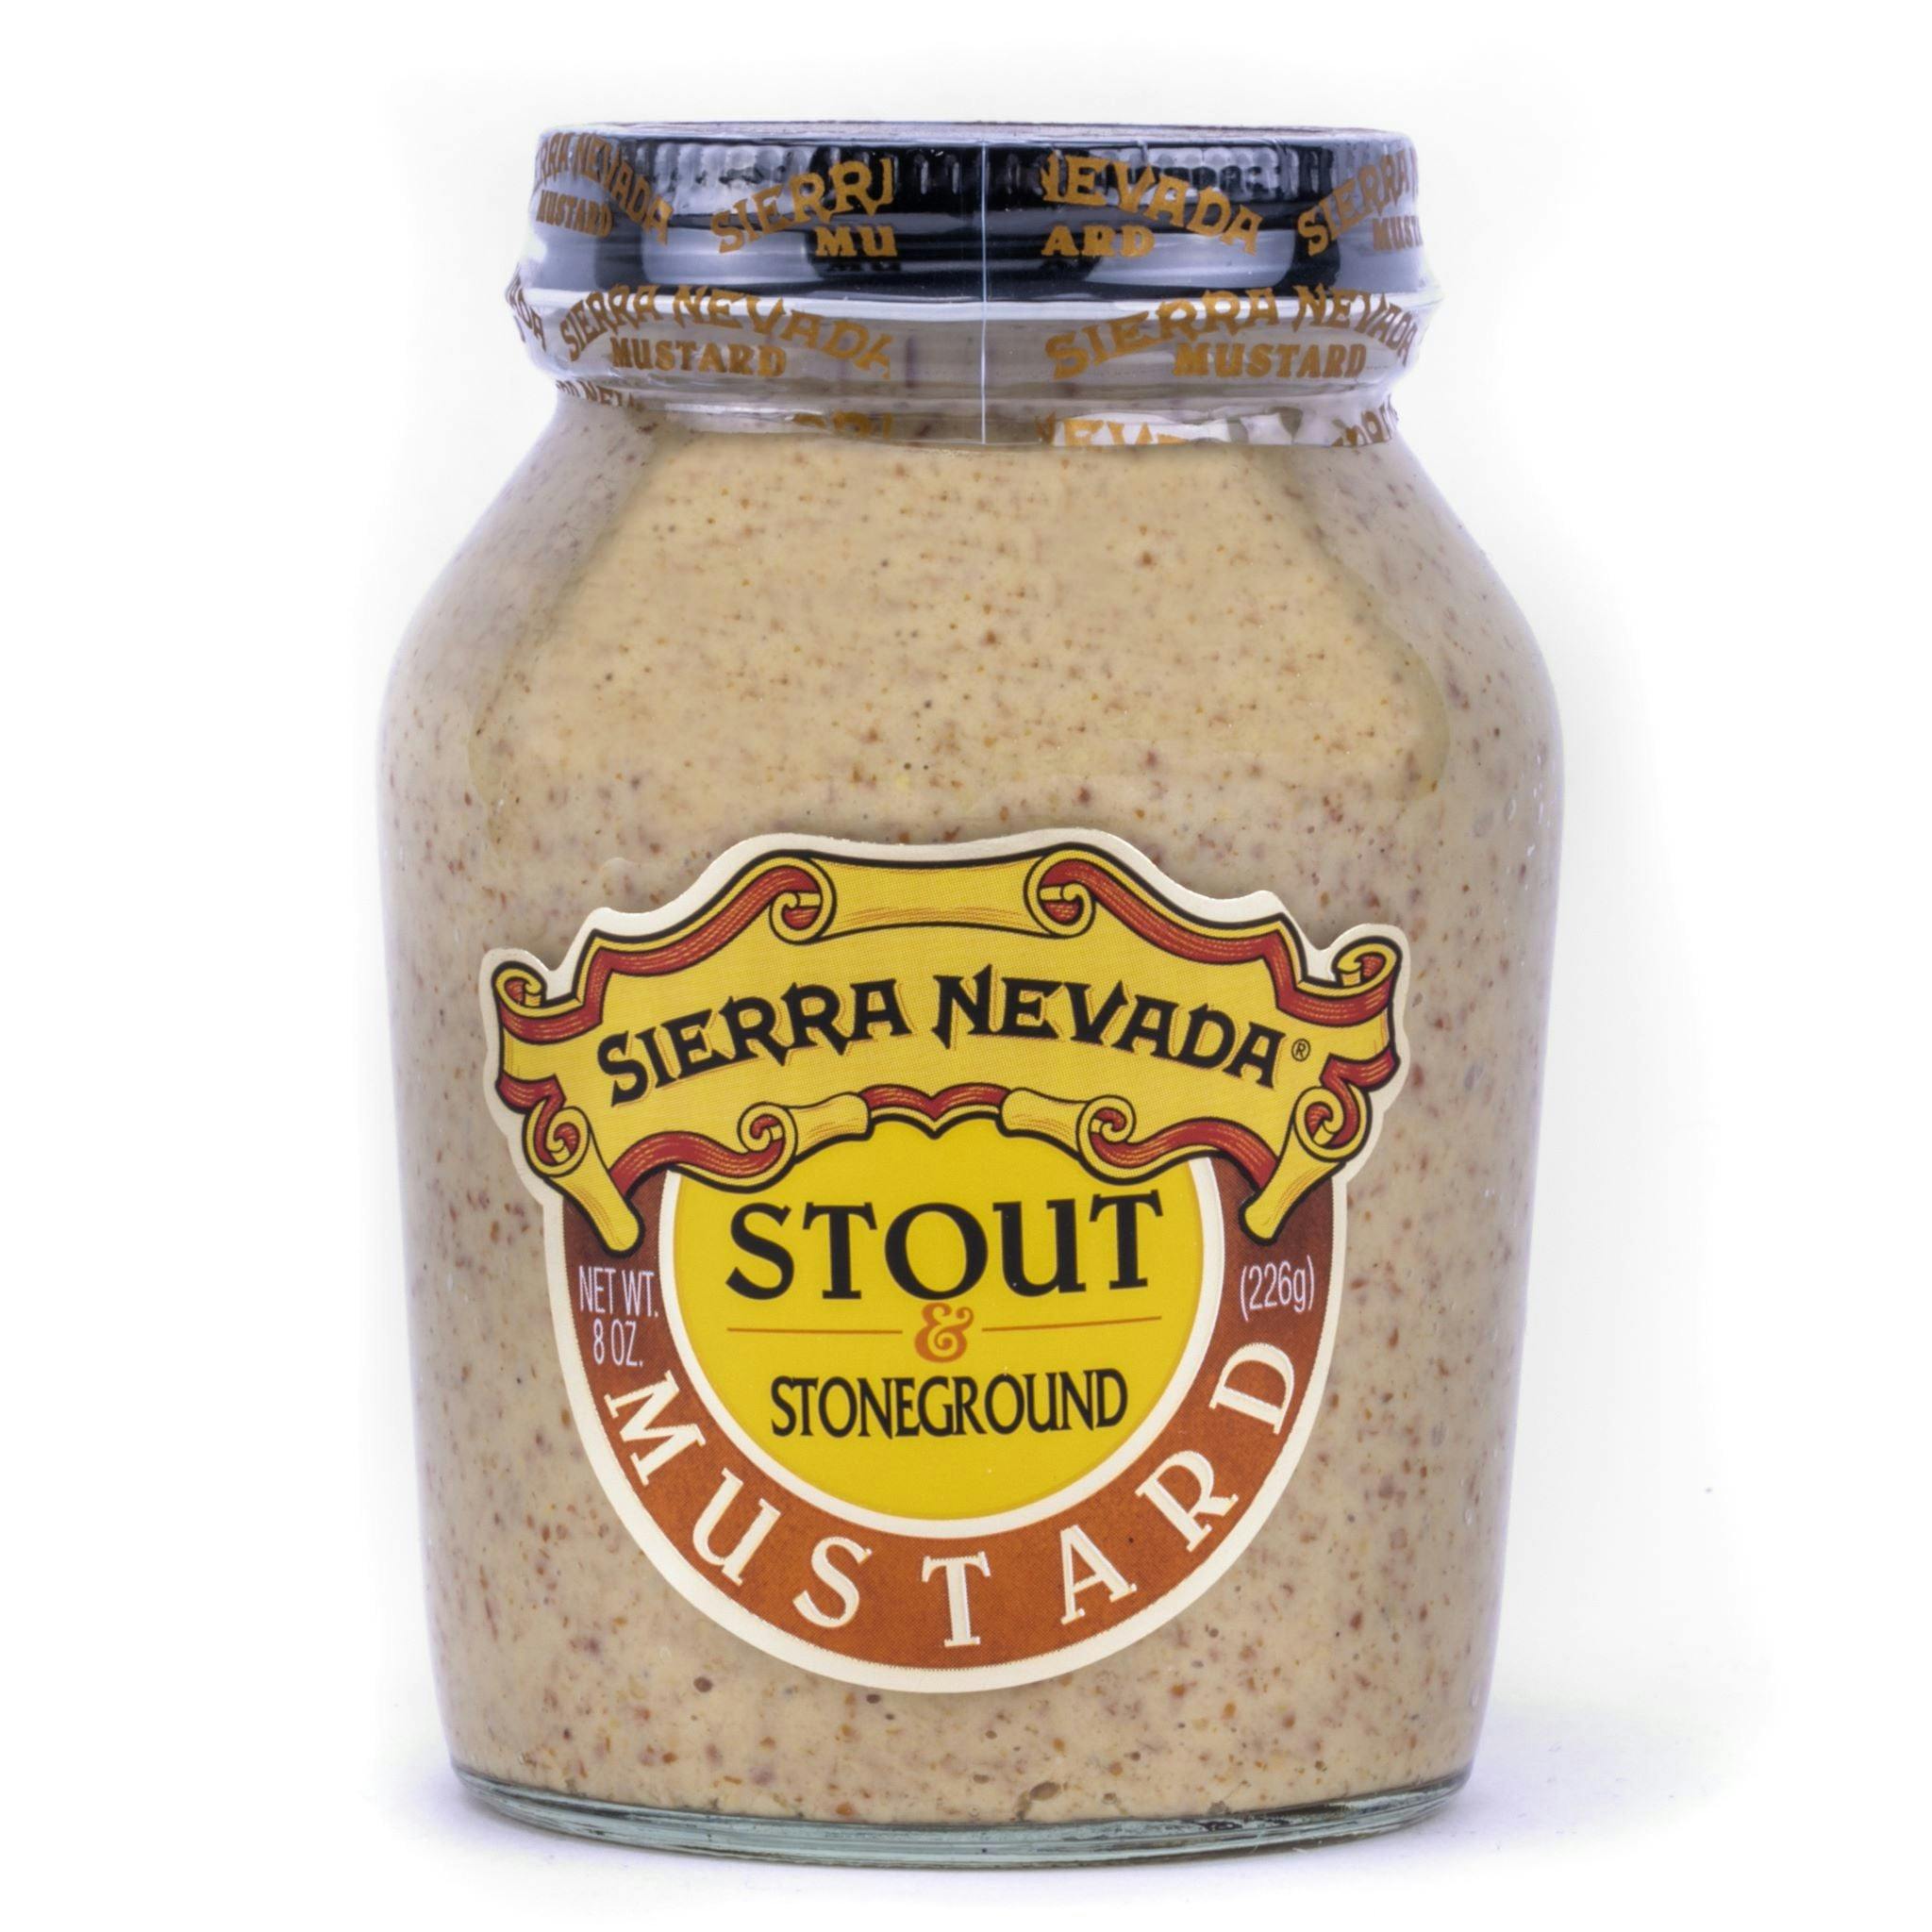 Sierra Nevada Stout stoneground mustard